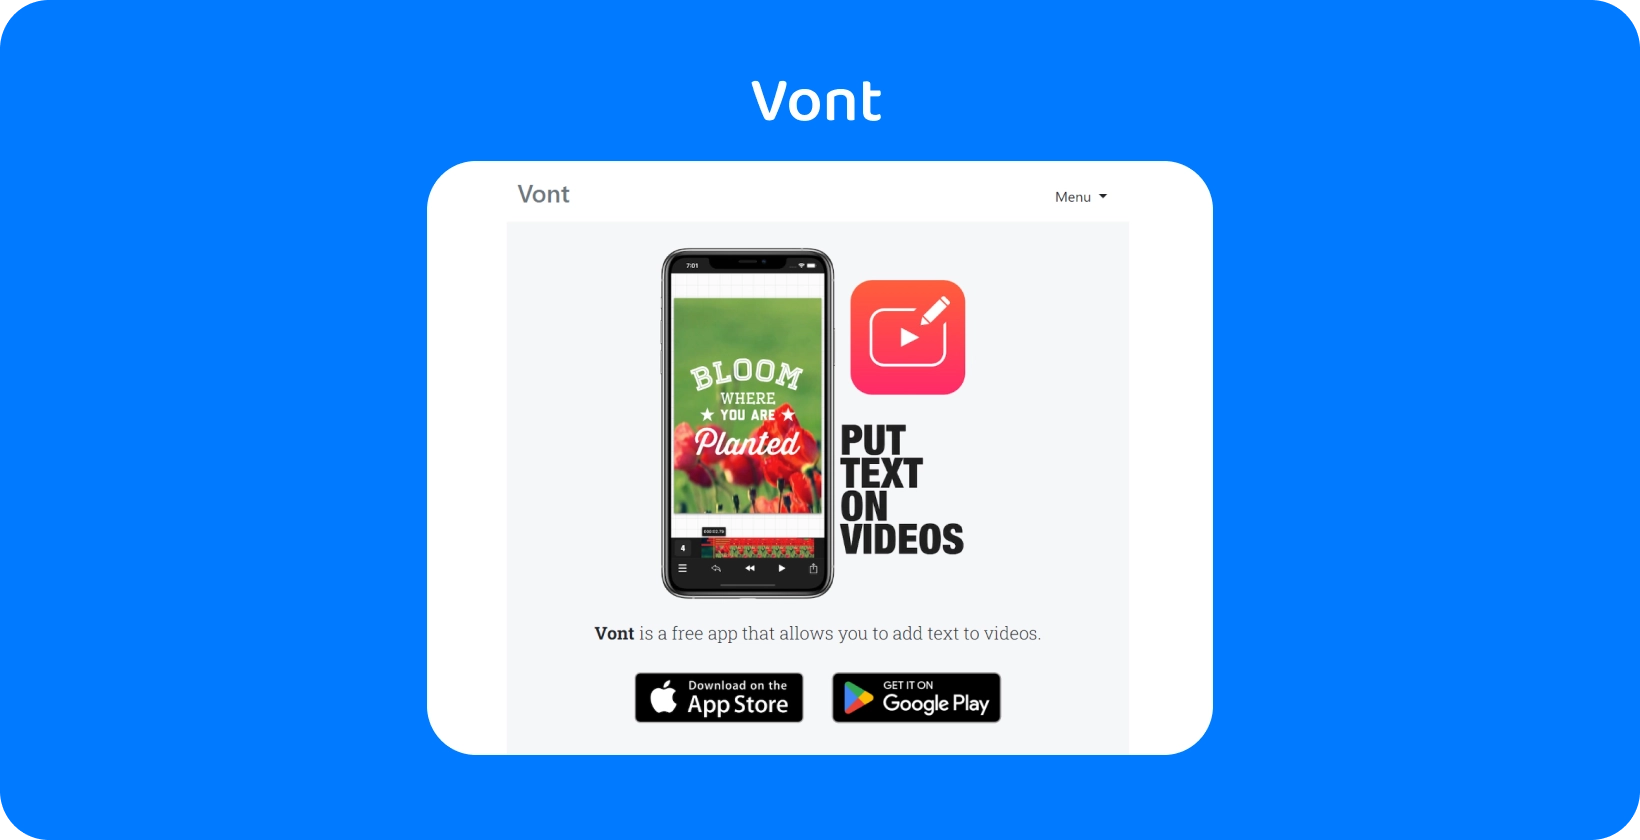 Az okostelefon megjeleníti Vont alkalmazás felületét, kiemelve annak funkcióját, hogy szöveget adjon hozzá a videókhoz, elérhető App Store és Google Play